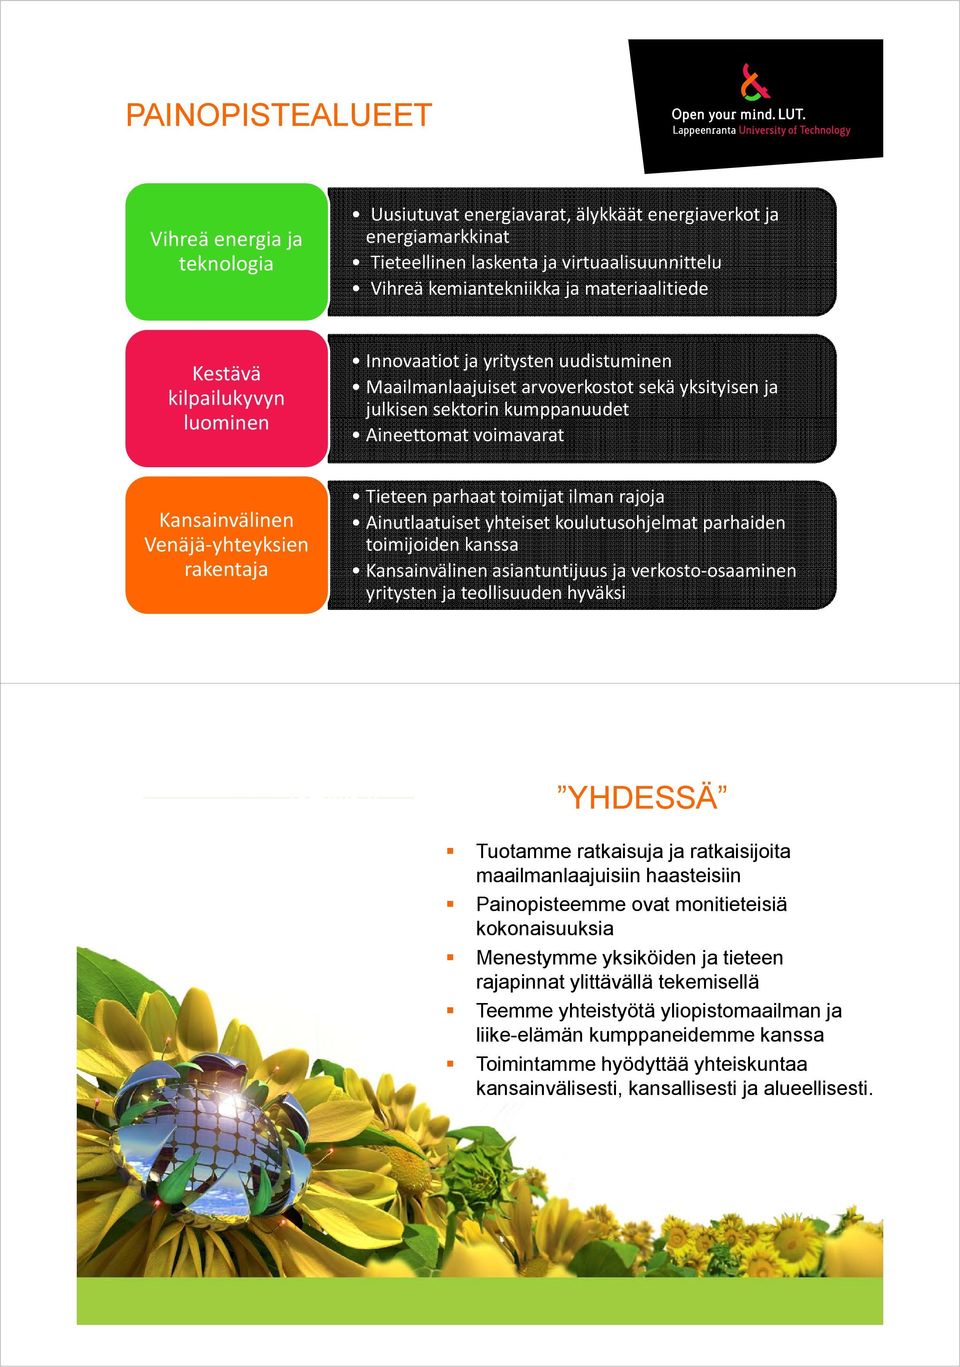 Kansainvälinen Venäjä yhteyksien rakentaja Tieteen parhaattoimijatilmanrajoja toimijat ilman rajoja Ainutlaatuiset yhteiset koulutusohjelmat parhaiden toimijoiden kanssa Kansainvälinen asiantuntijuus